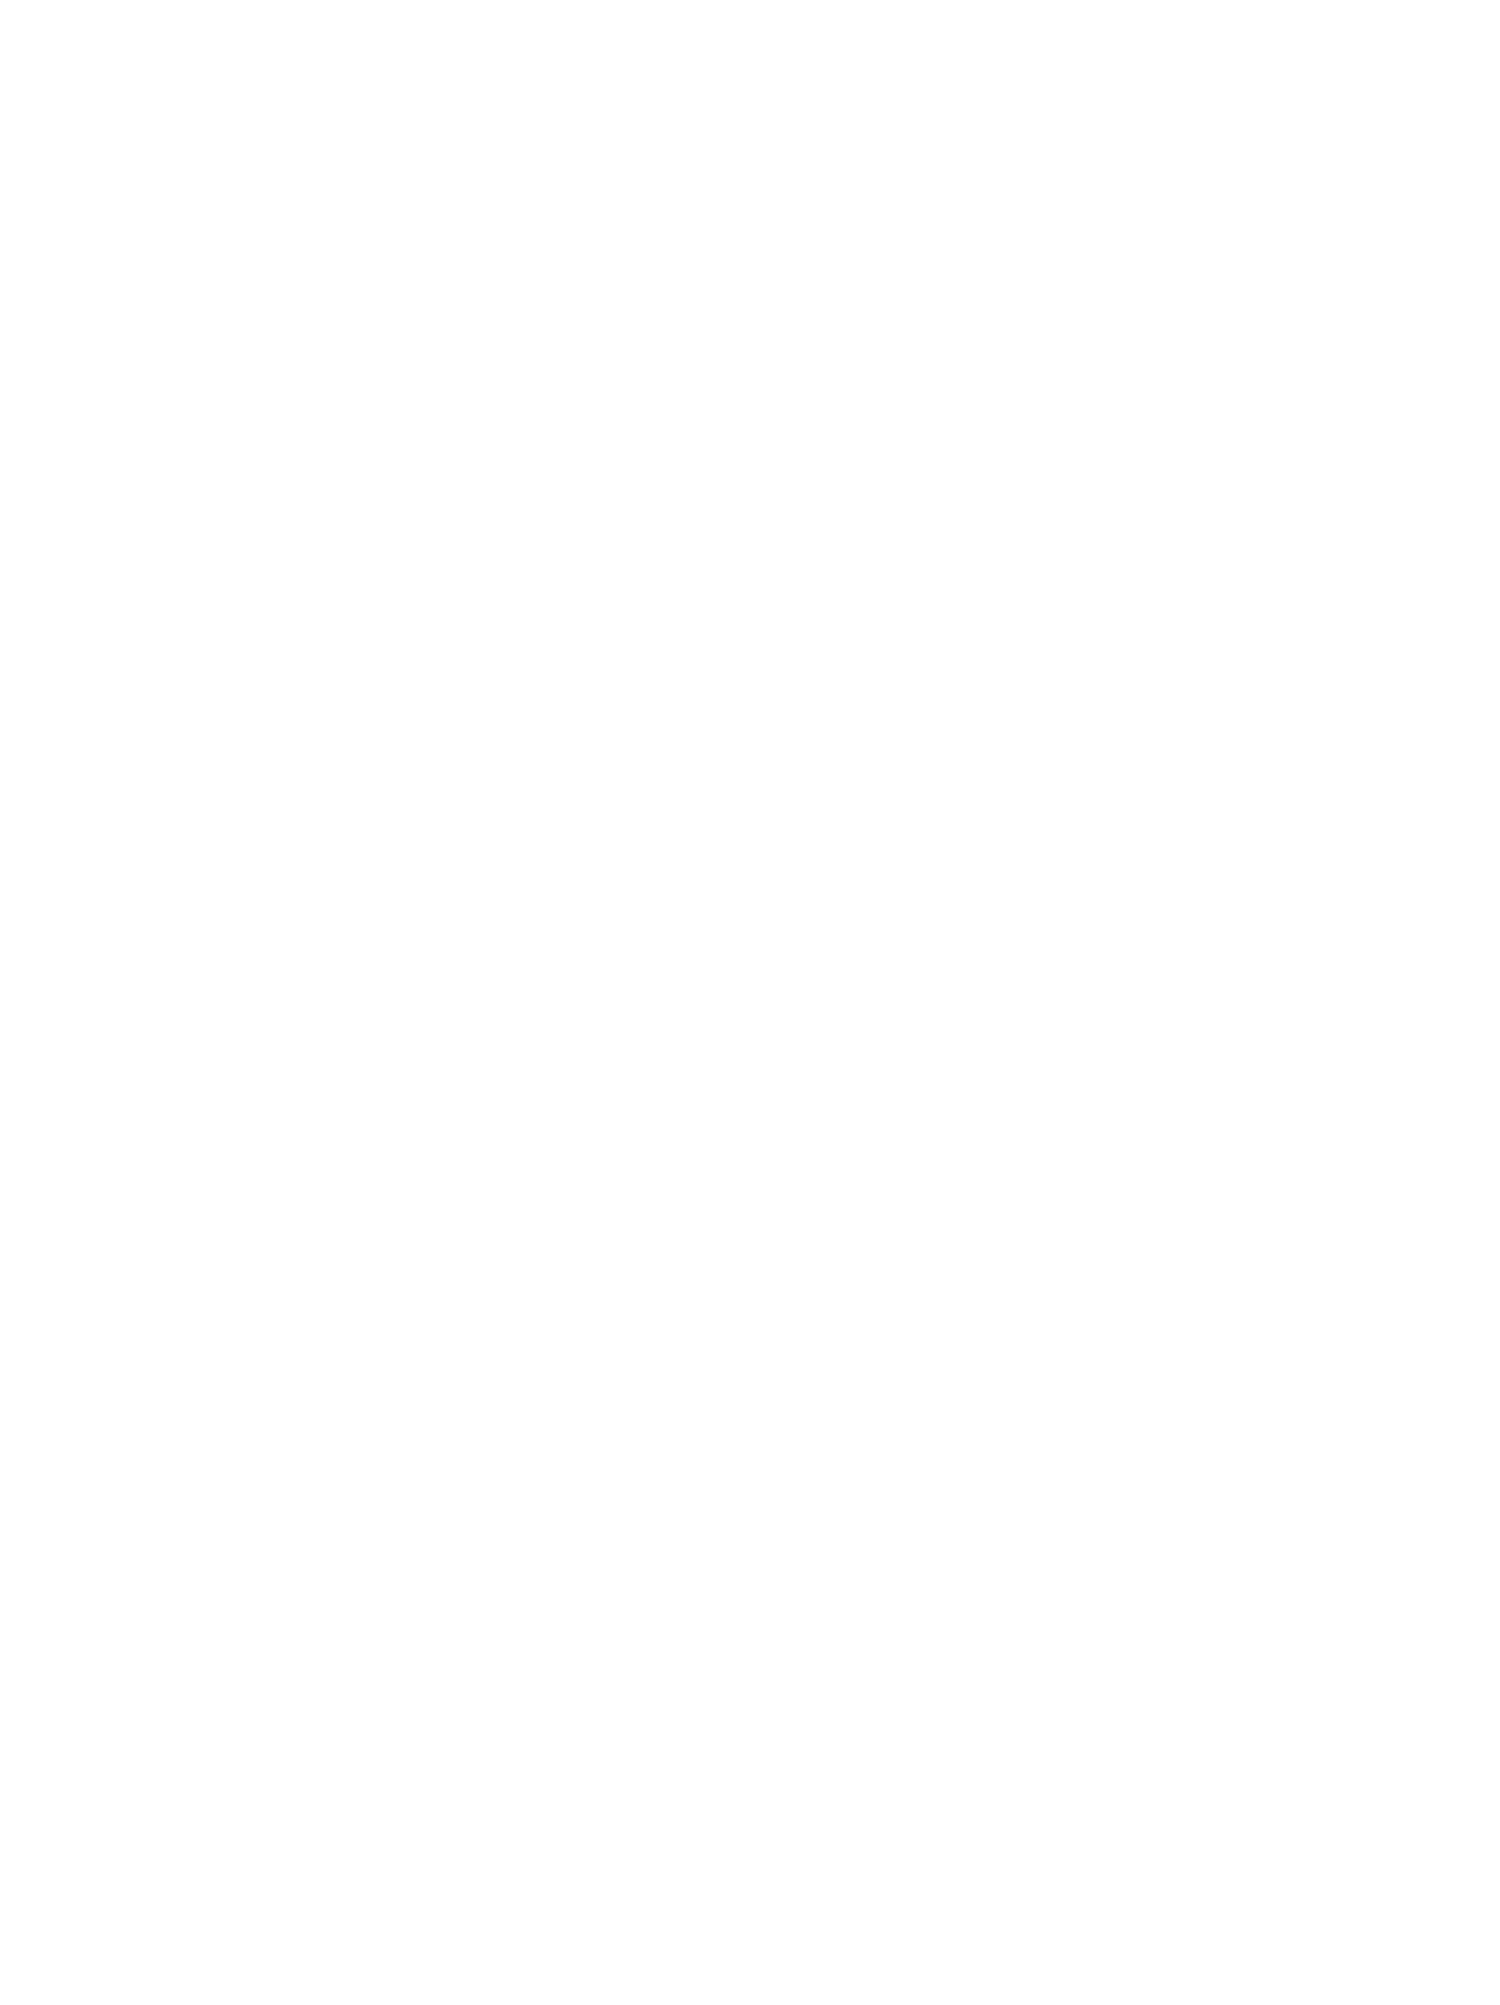 The Sound SF